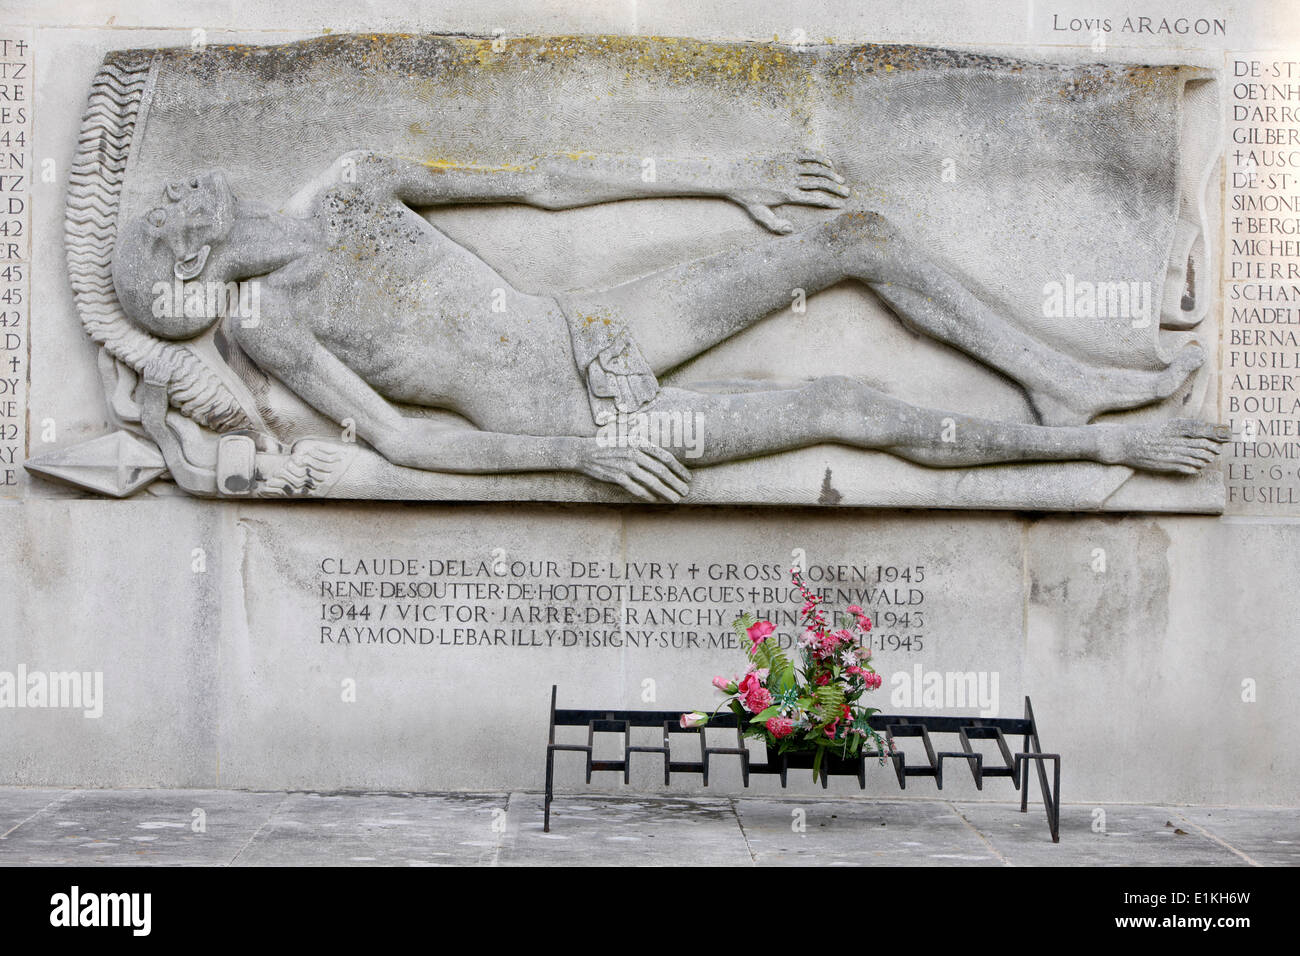 Seconda Guerra Mondiale memorial - Particolare di una scultura di Ulysse Gemignani Foto Stock